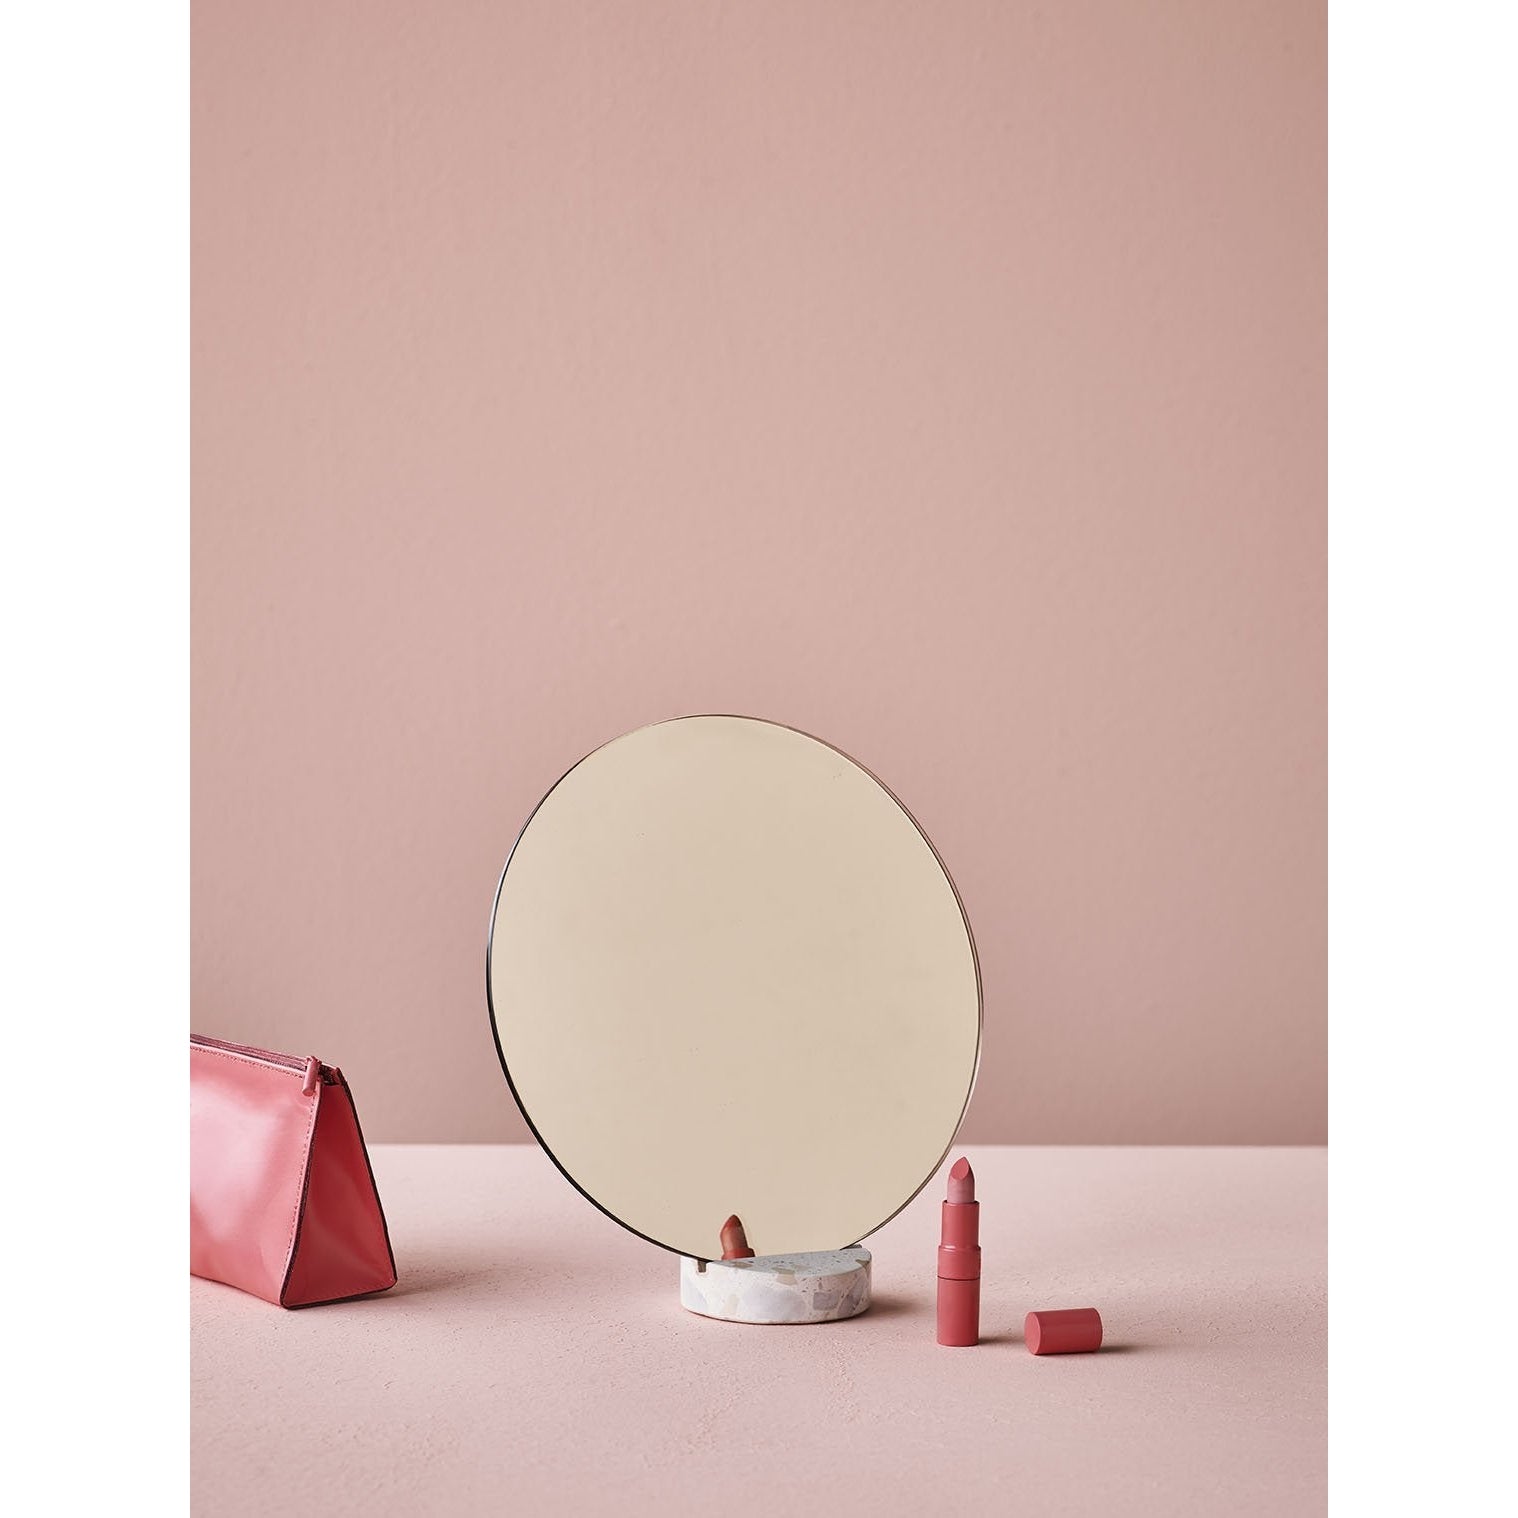 Lucie Kaas Erat spiegel roze, Ø 25 cm